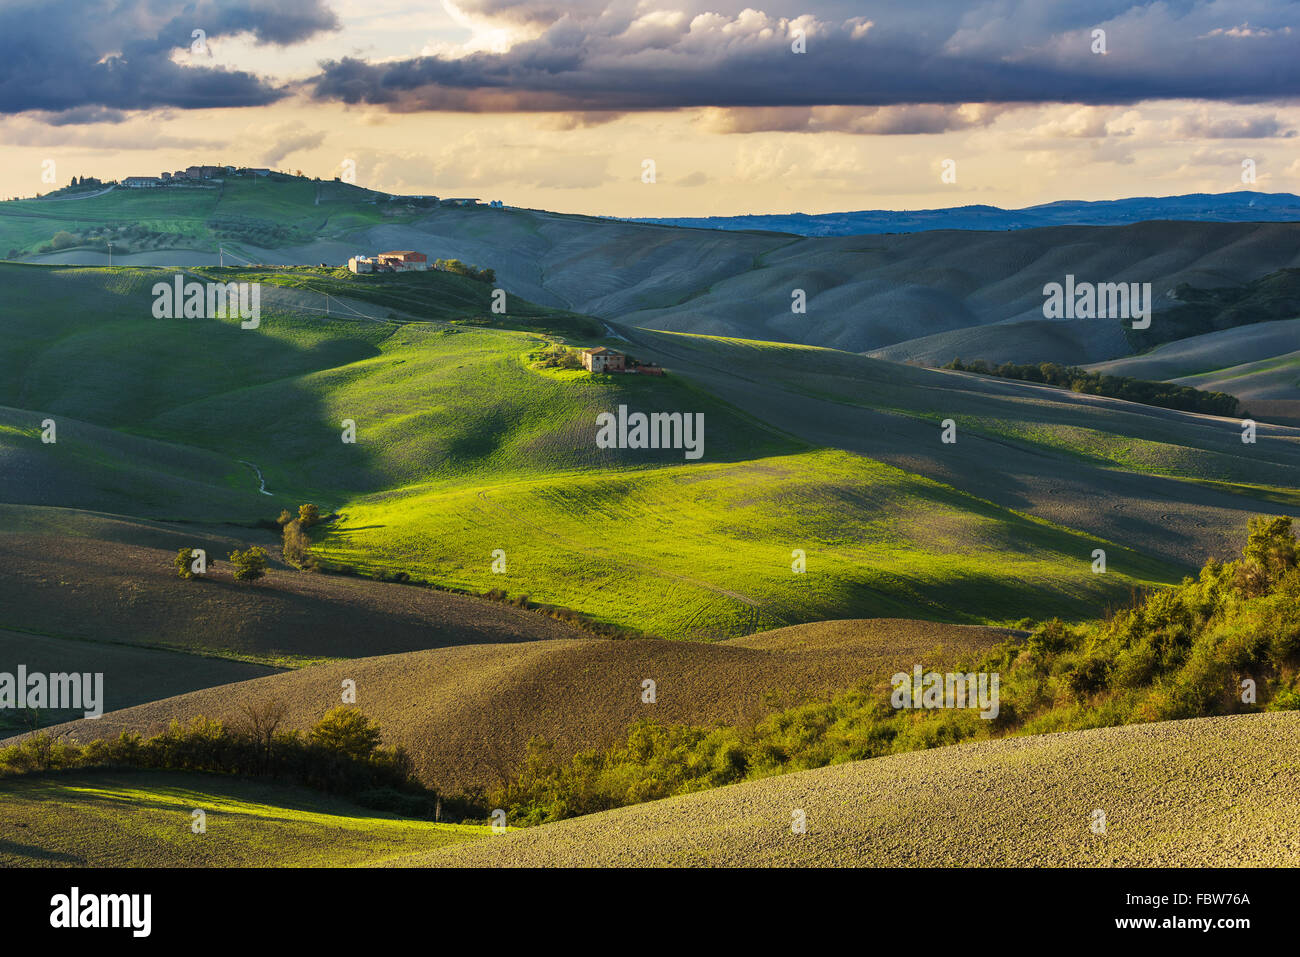 Fantastic sunny fall field in Italy, tuscany landscape. Stock Photo